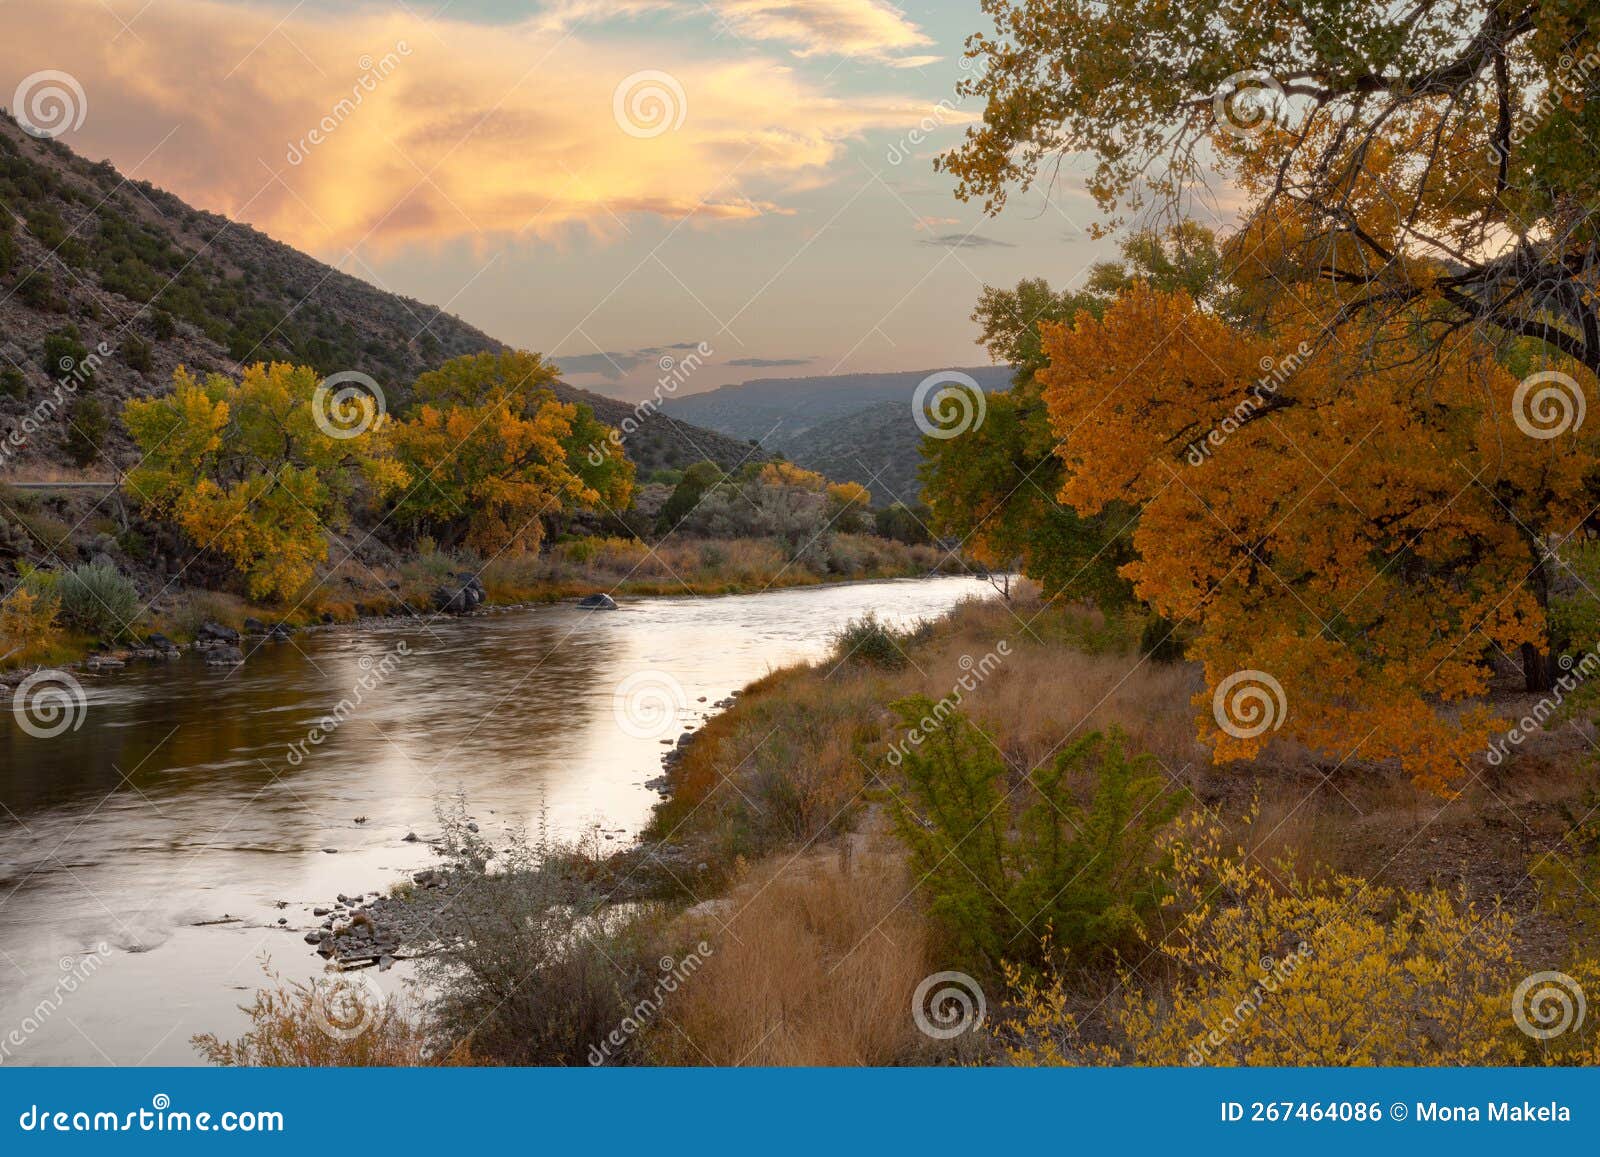 fall in embudo, rio arriba county, new mexico